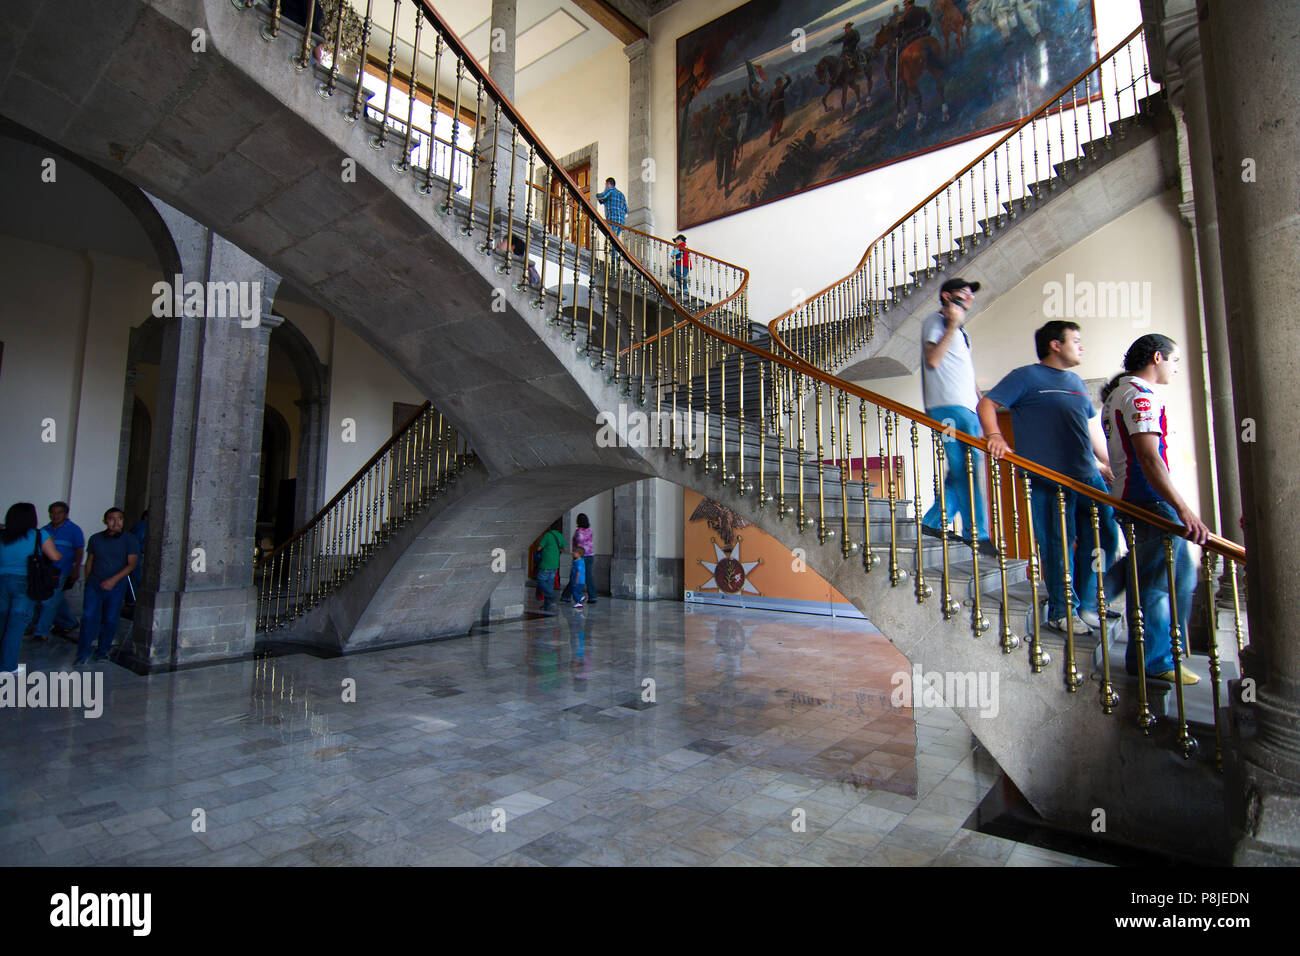 La ville de Mexico, Mexique - 2018 : escalier à l'arcade Double le château de Chapultepec, le seul château royal dans les Amériques. Banque D'Images